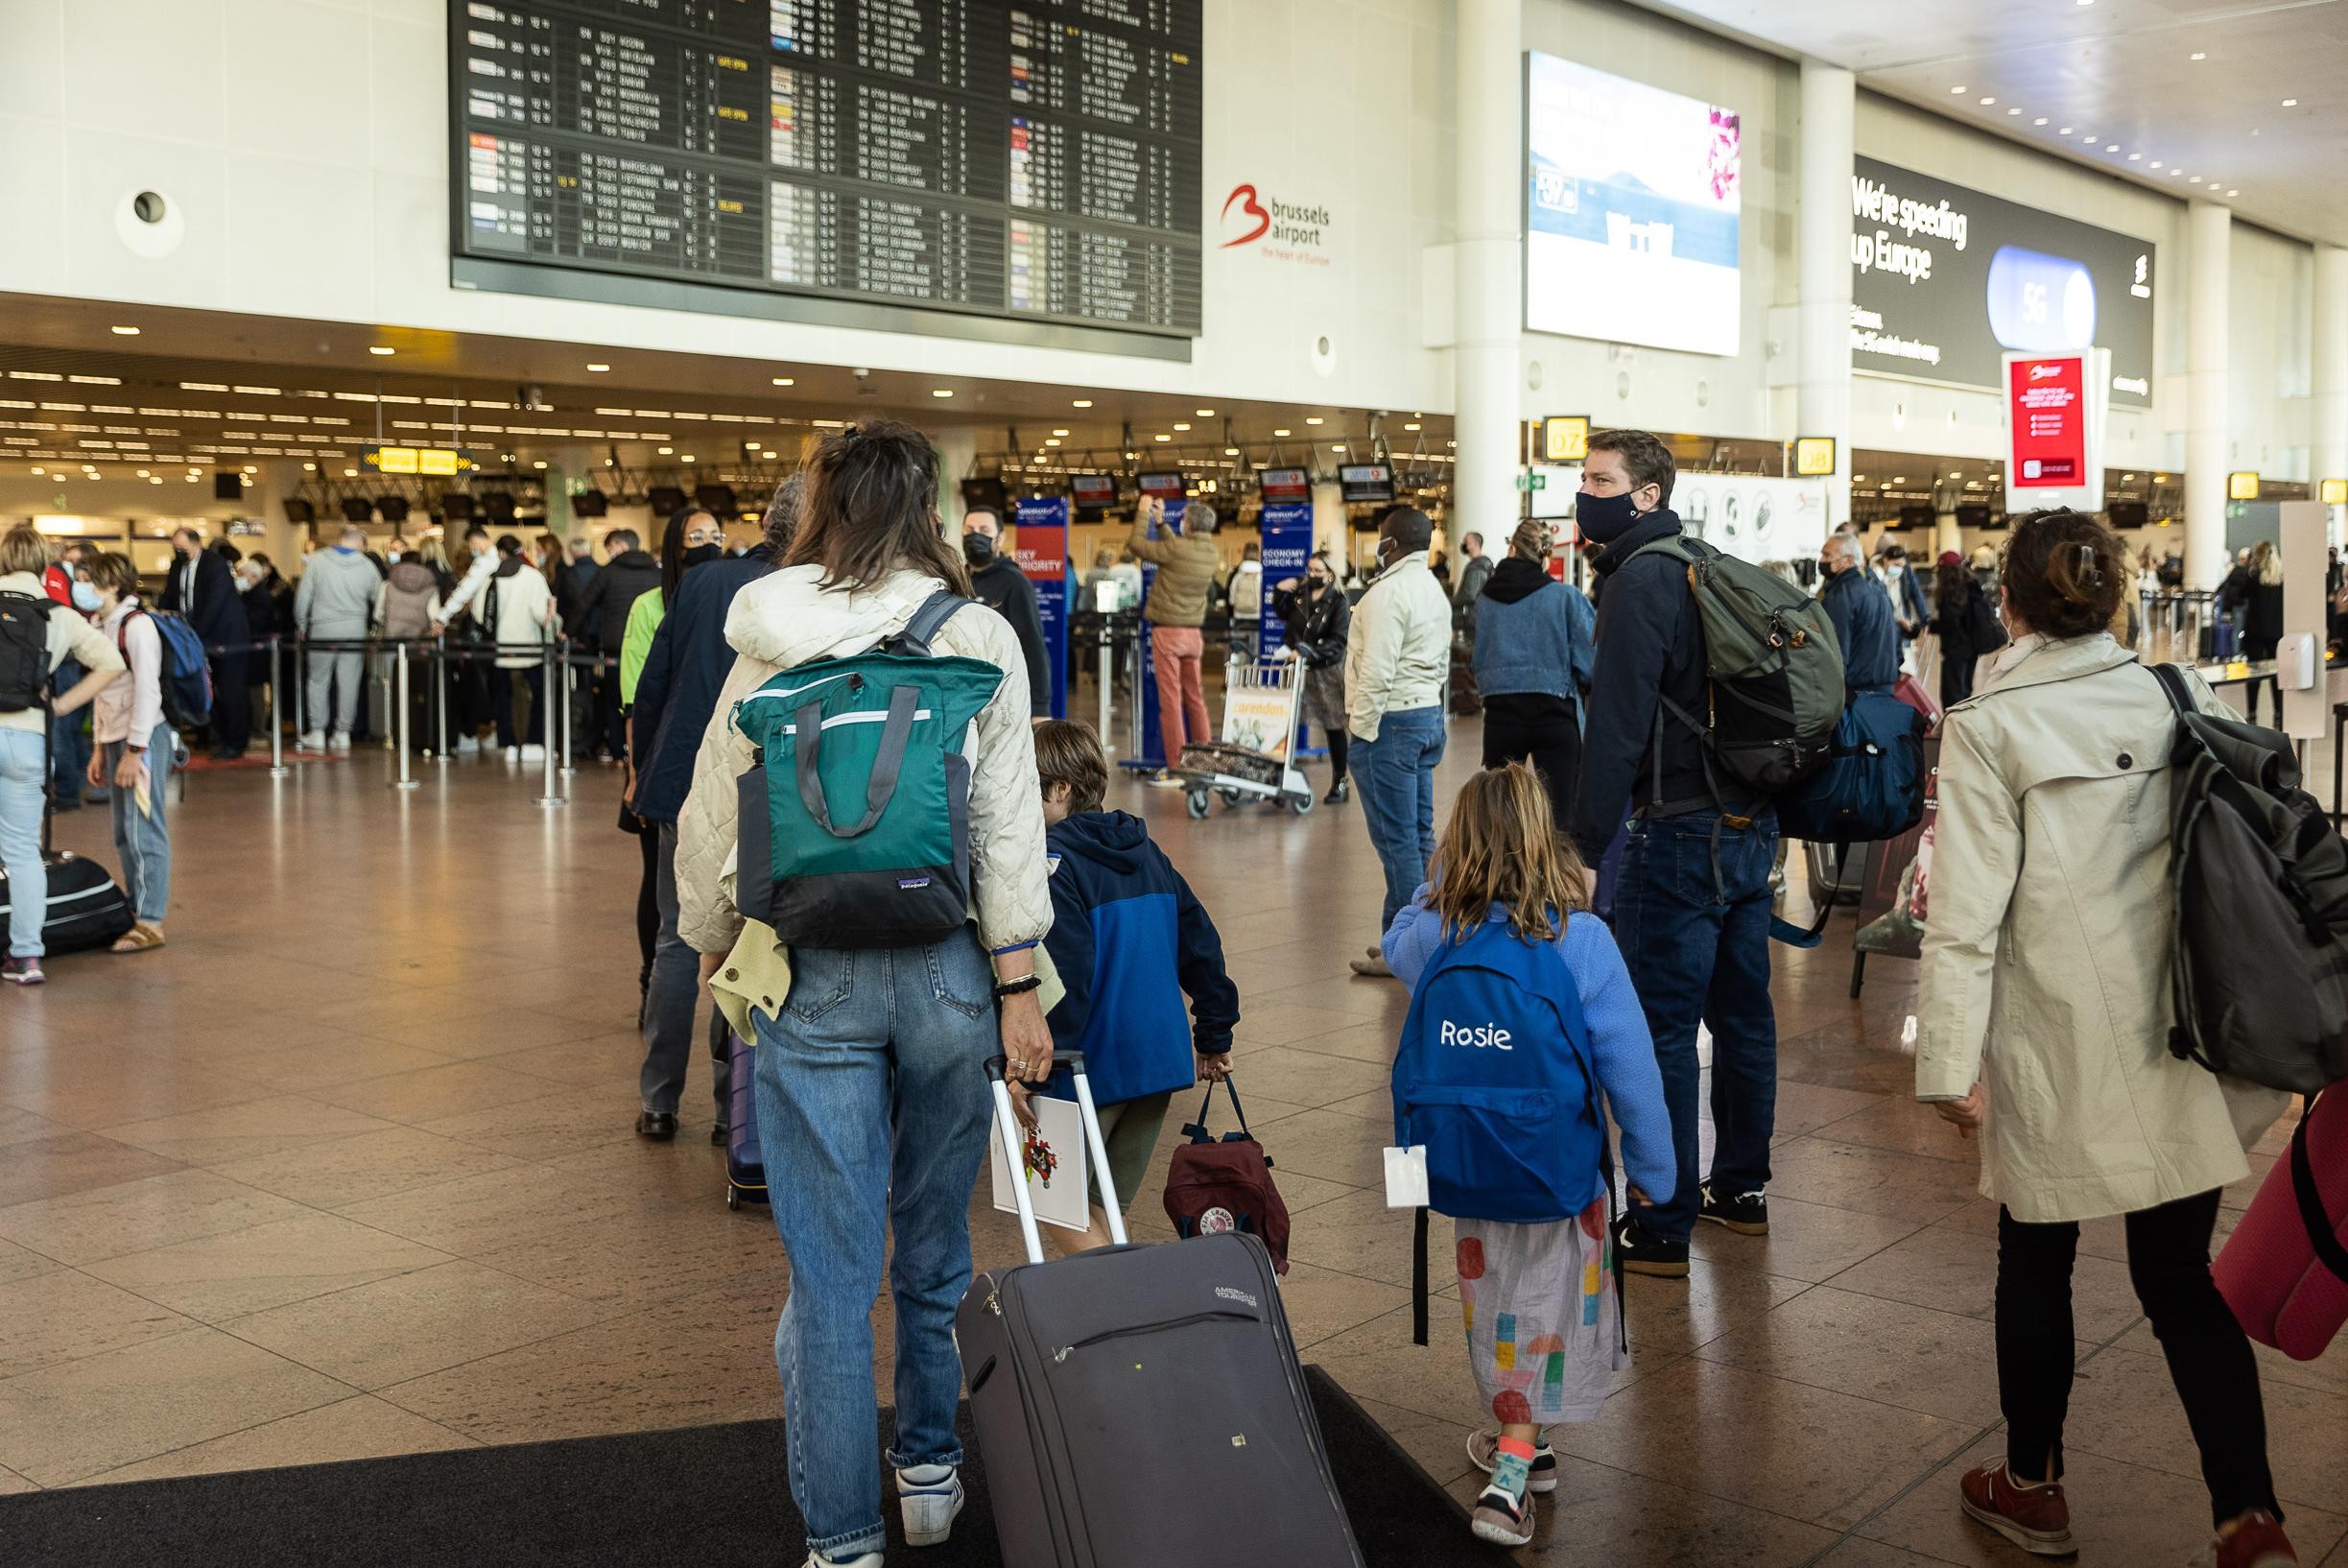 Le compagnie aeree cancellano più di 100 voli per malattia del personale, nessun problema finora a Zaventem: “Ma siamo pronti” (Zaventem)